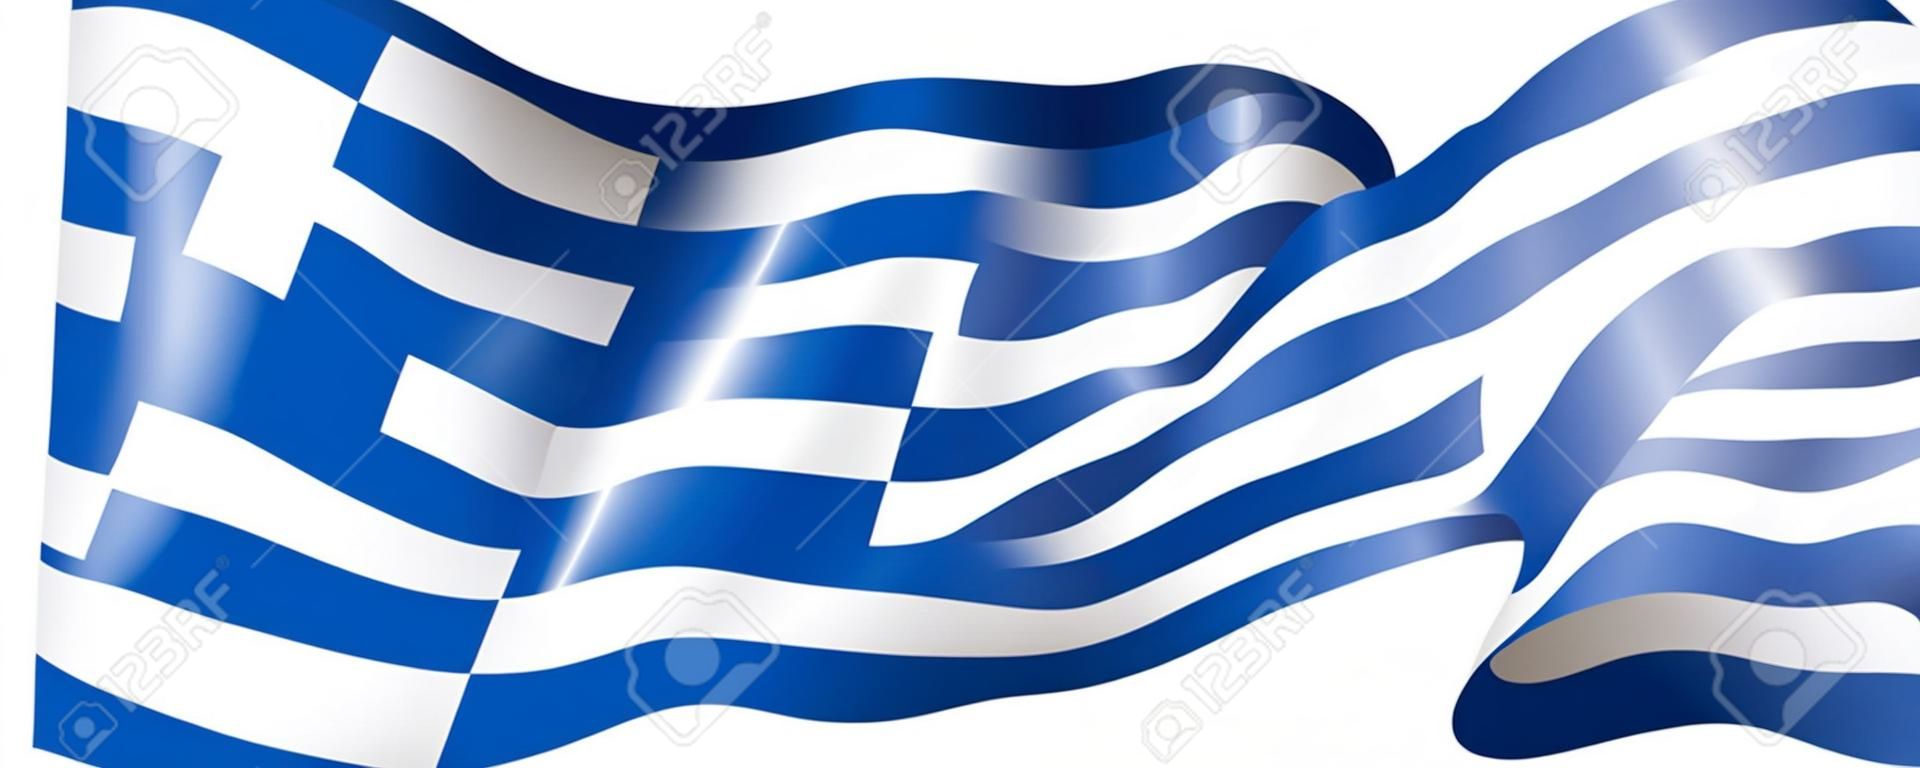 Bandiera della Grecia, illustrazione vettoriale su sfondo bianco